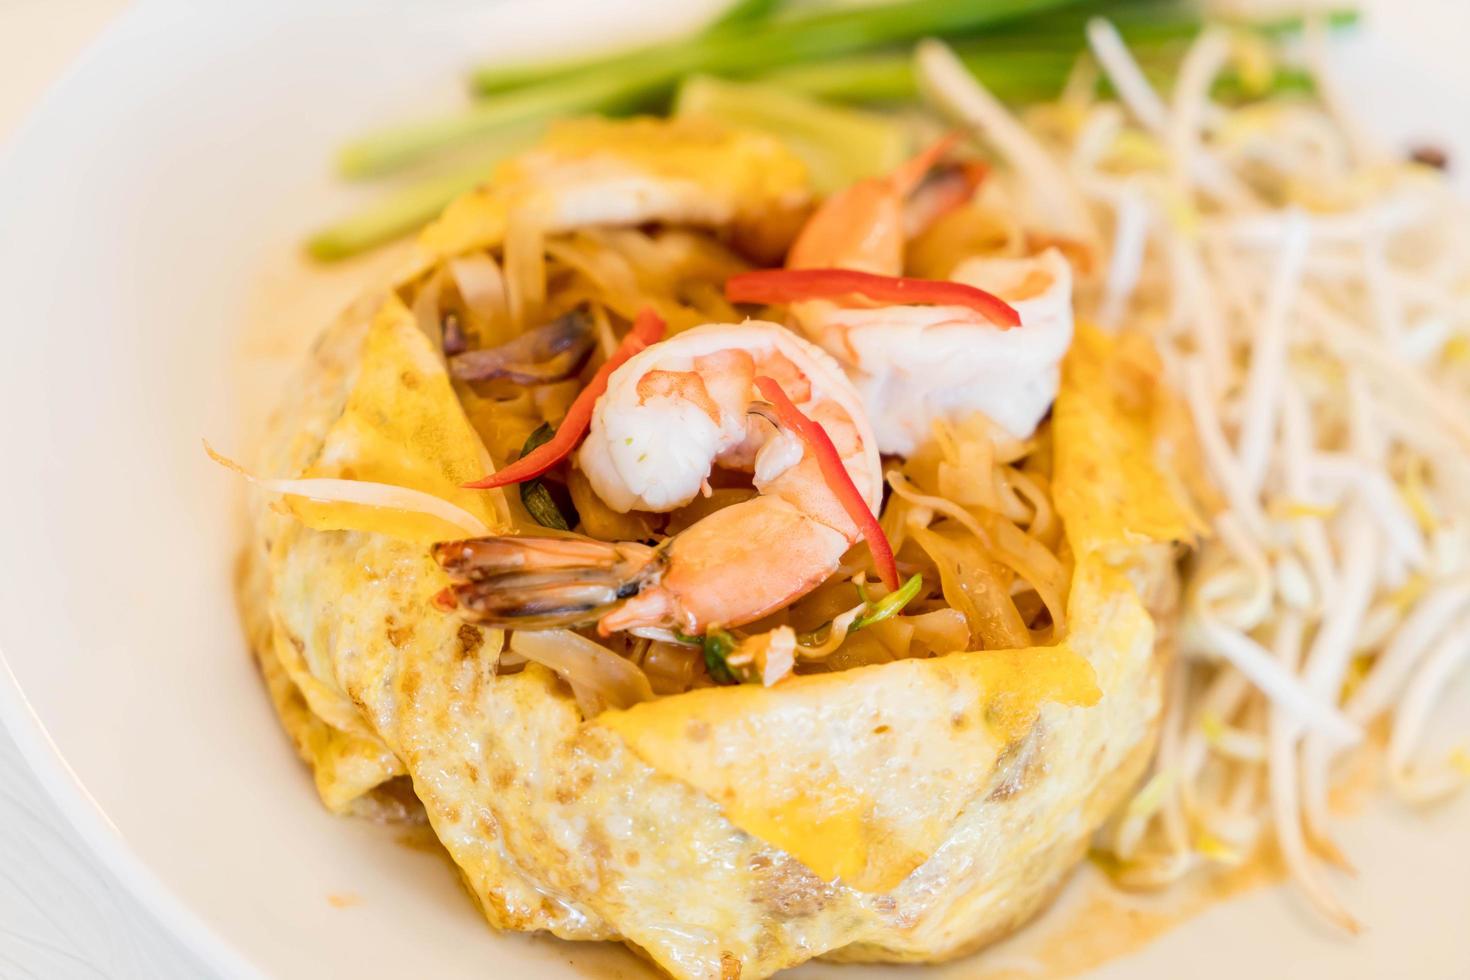 Pad thai food photo